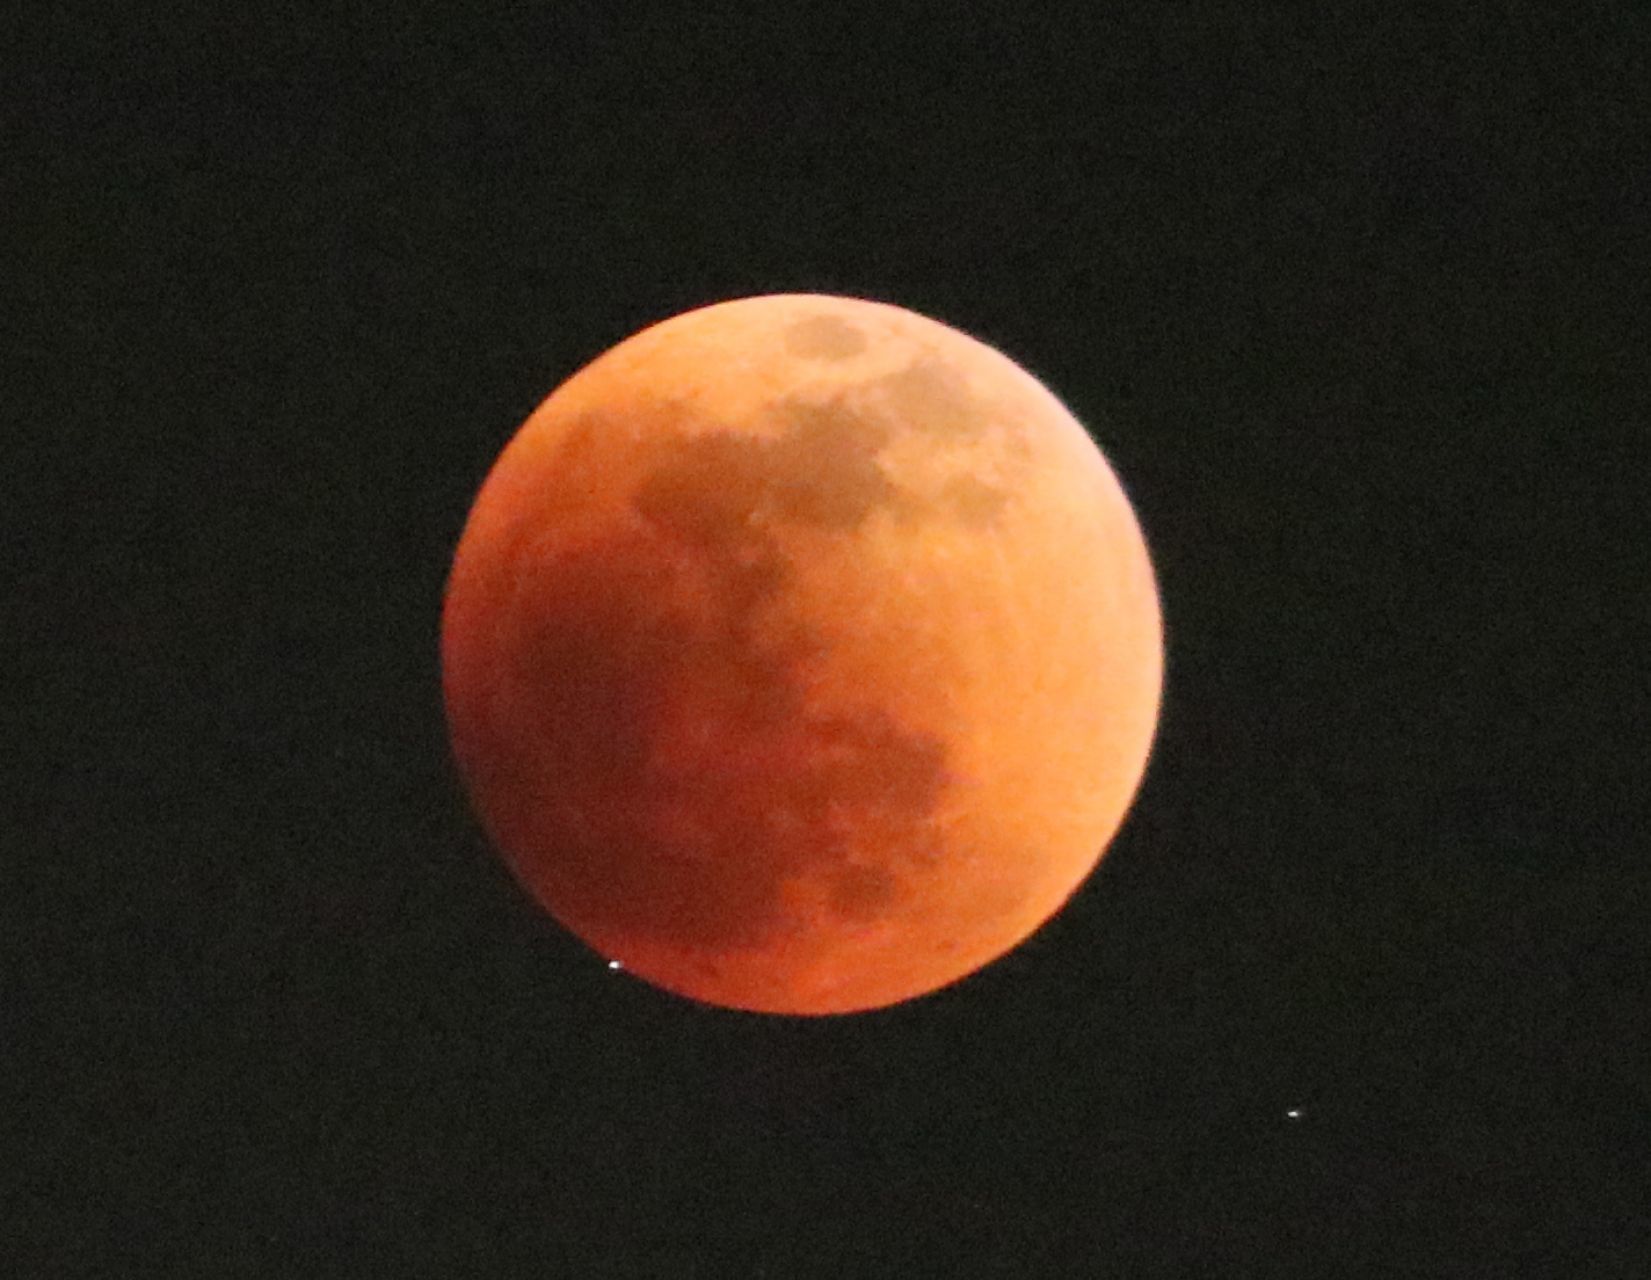 El eclipse lunar total,  que inicio en la noche del domingo y culminó en la madrugada del lunes, pudo ser visto en todo el país.

FOTO: MARGARITO PÉREZ RETANA / CUARTOSCURO.COM